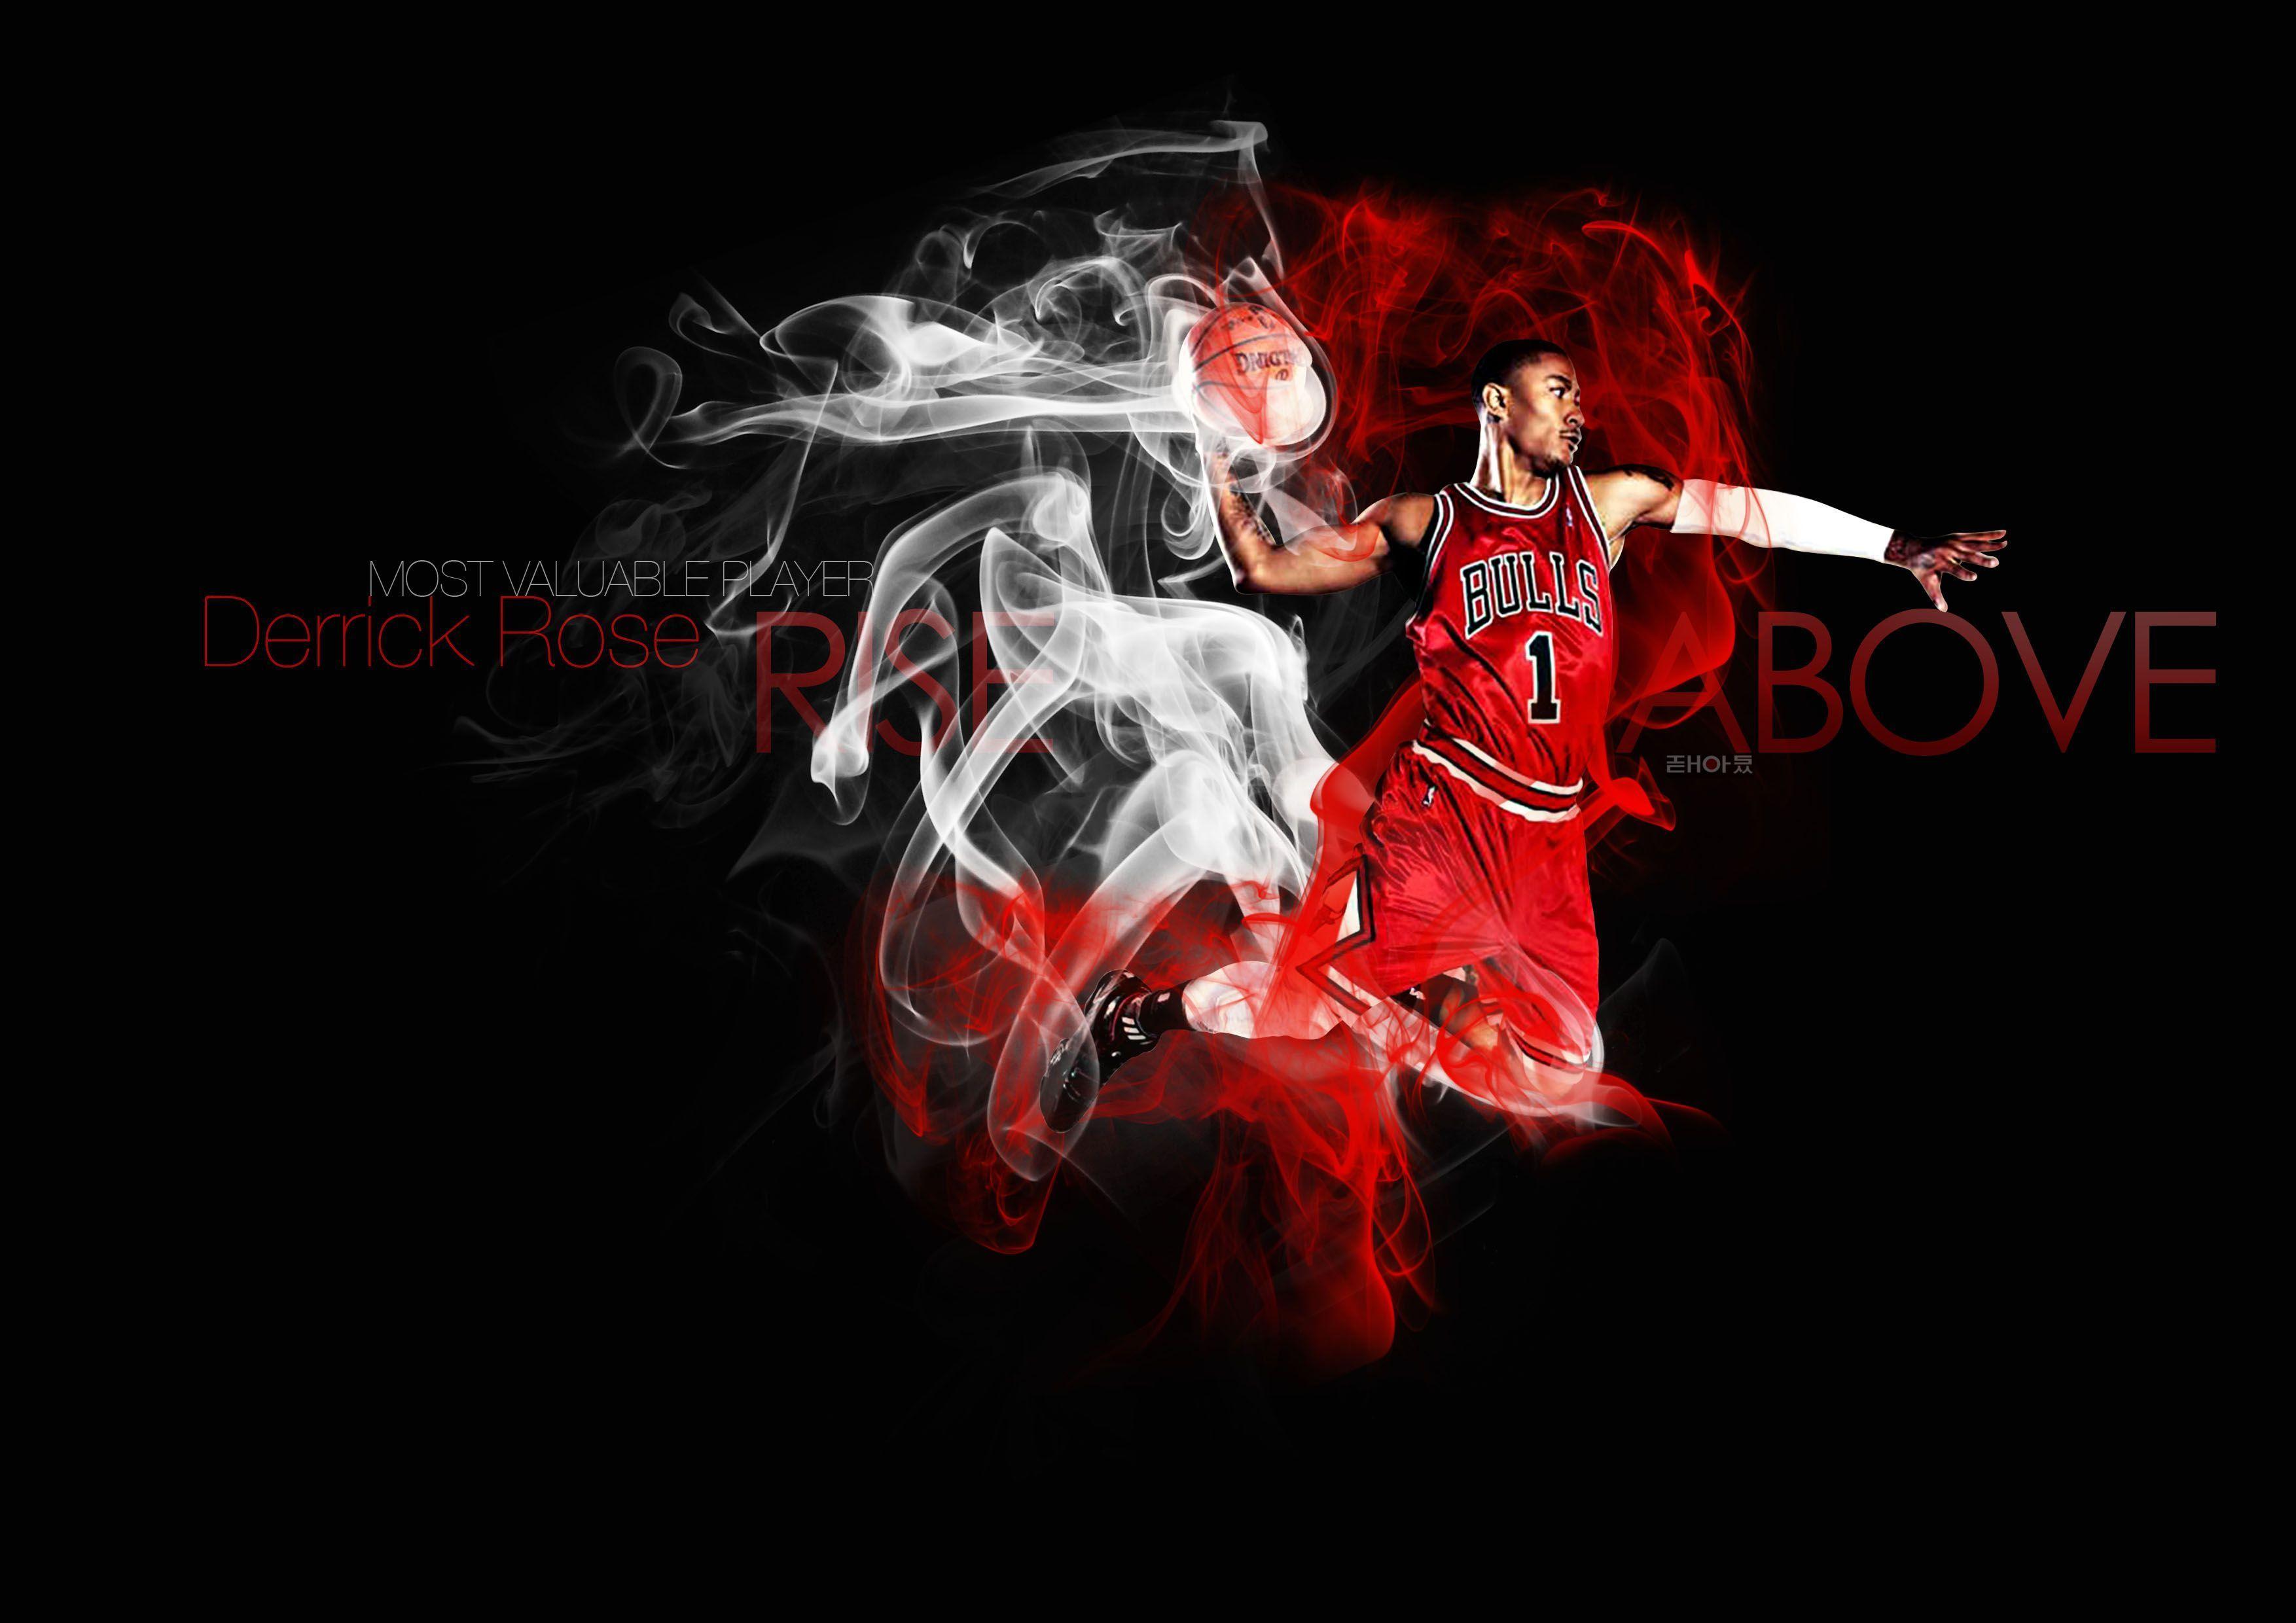 image For > Chicago Bulls Derrick Rose Wallpaper Dunk